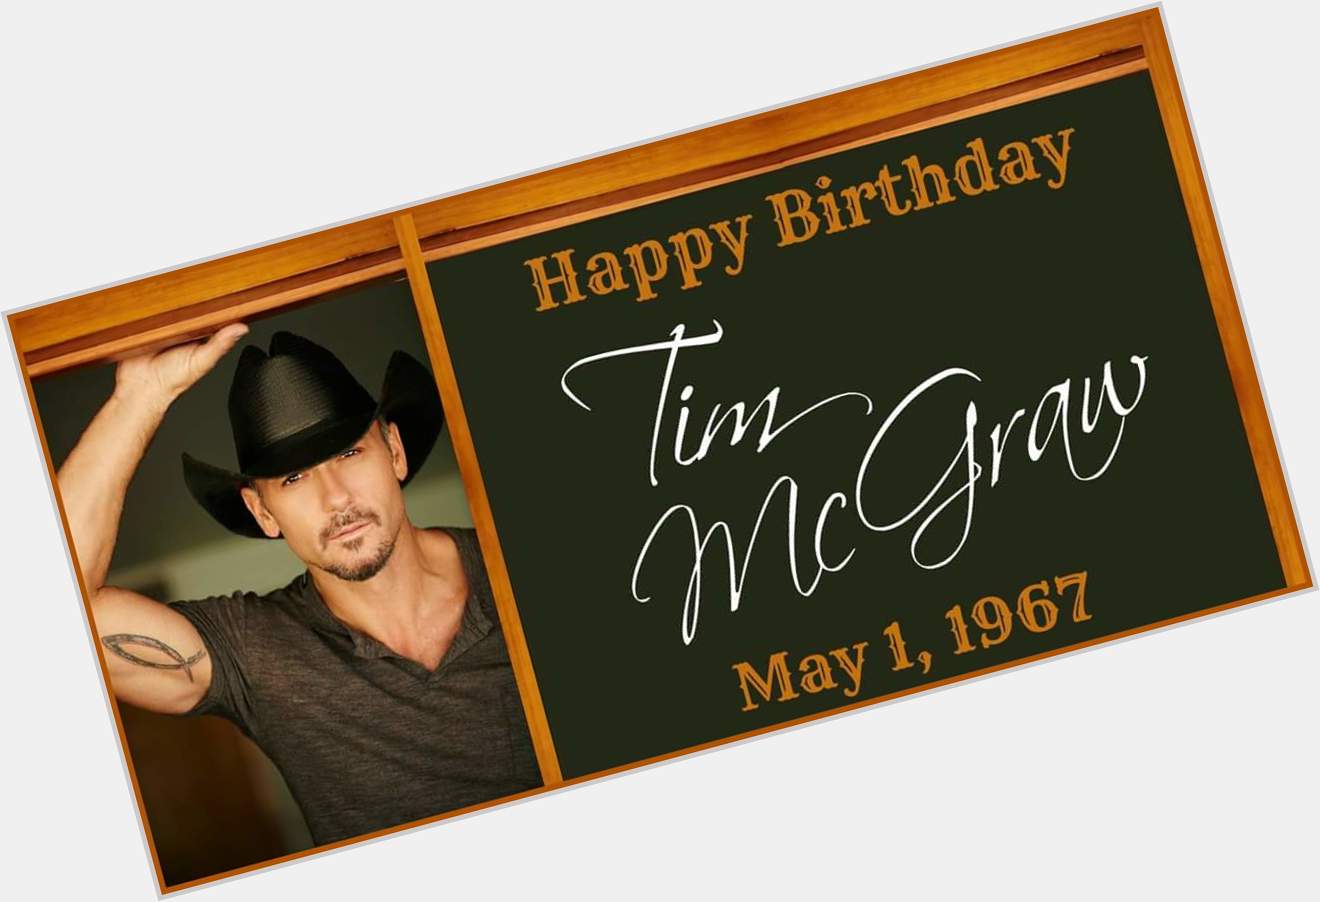 Happy birthday to you Tim McGraw. Xxox 